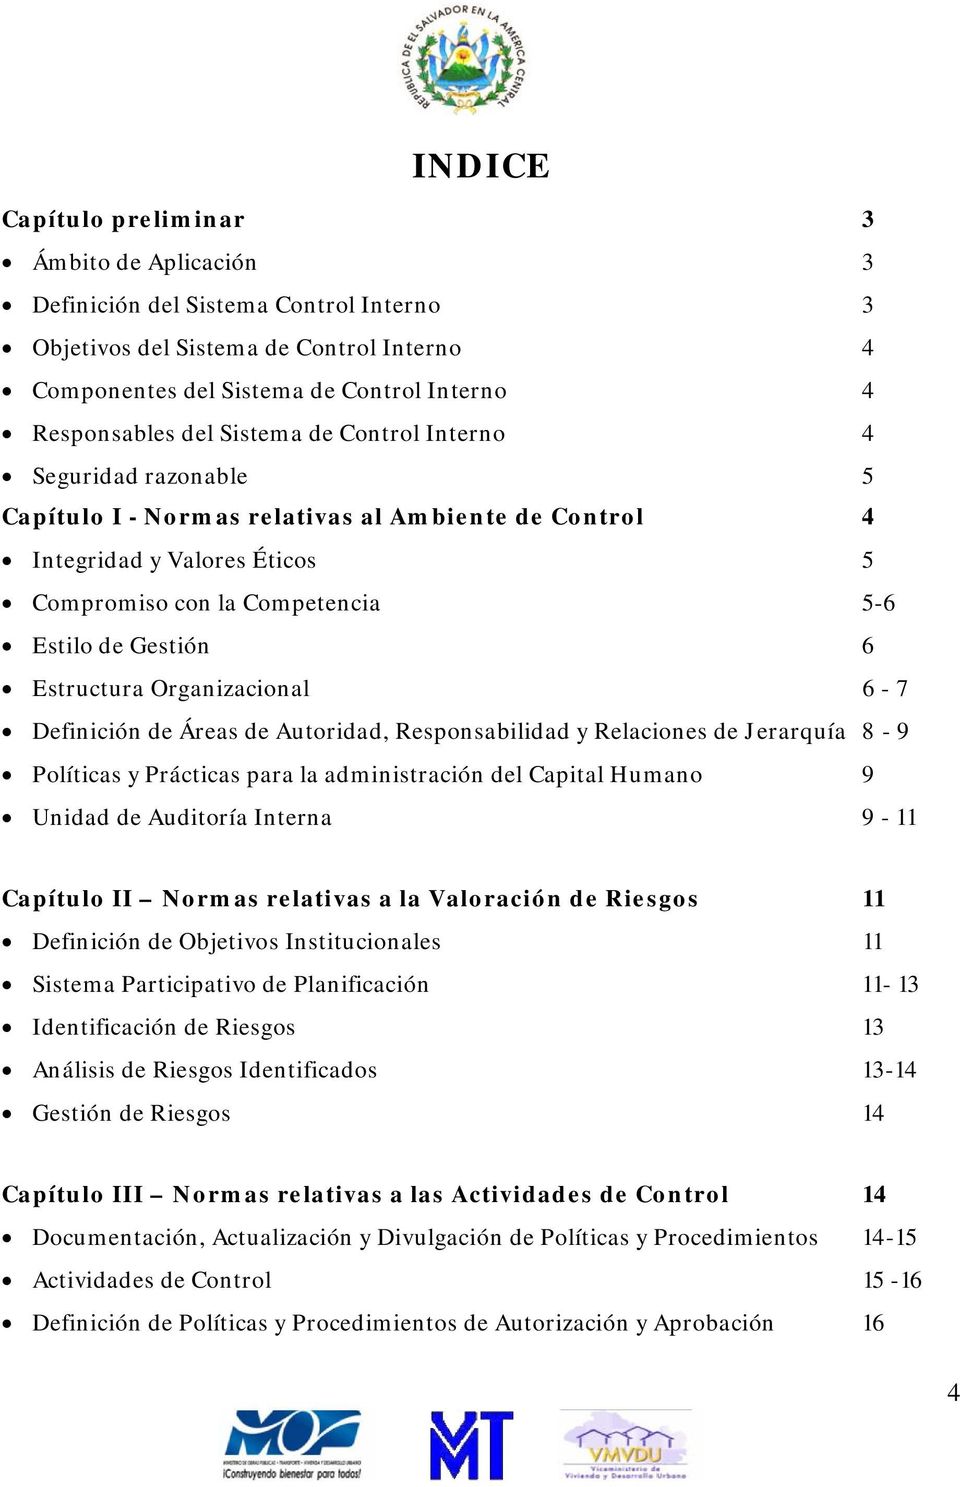 Estructura Organizacional 6-7 Definición de Áreas de Autoridad, Responsabilidad y Relaciones de Jerarquía 8-9 Políticas y Prácticas para la administración del Capital Humano 9 Unidad de Auditoría